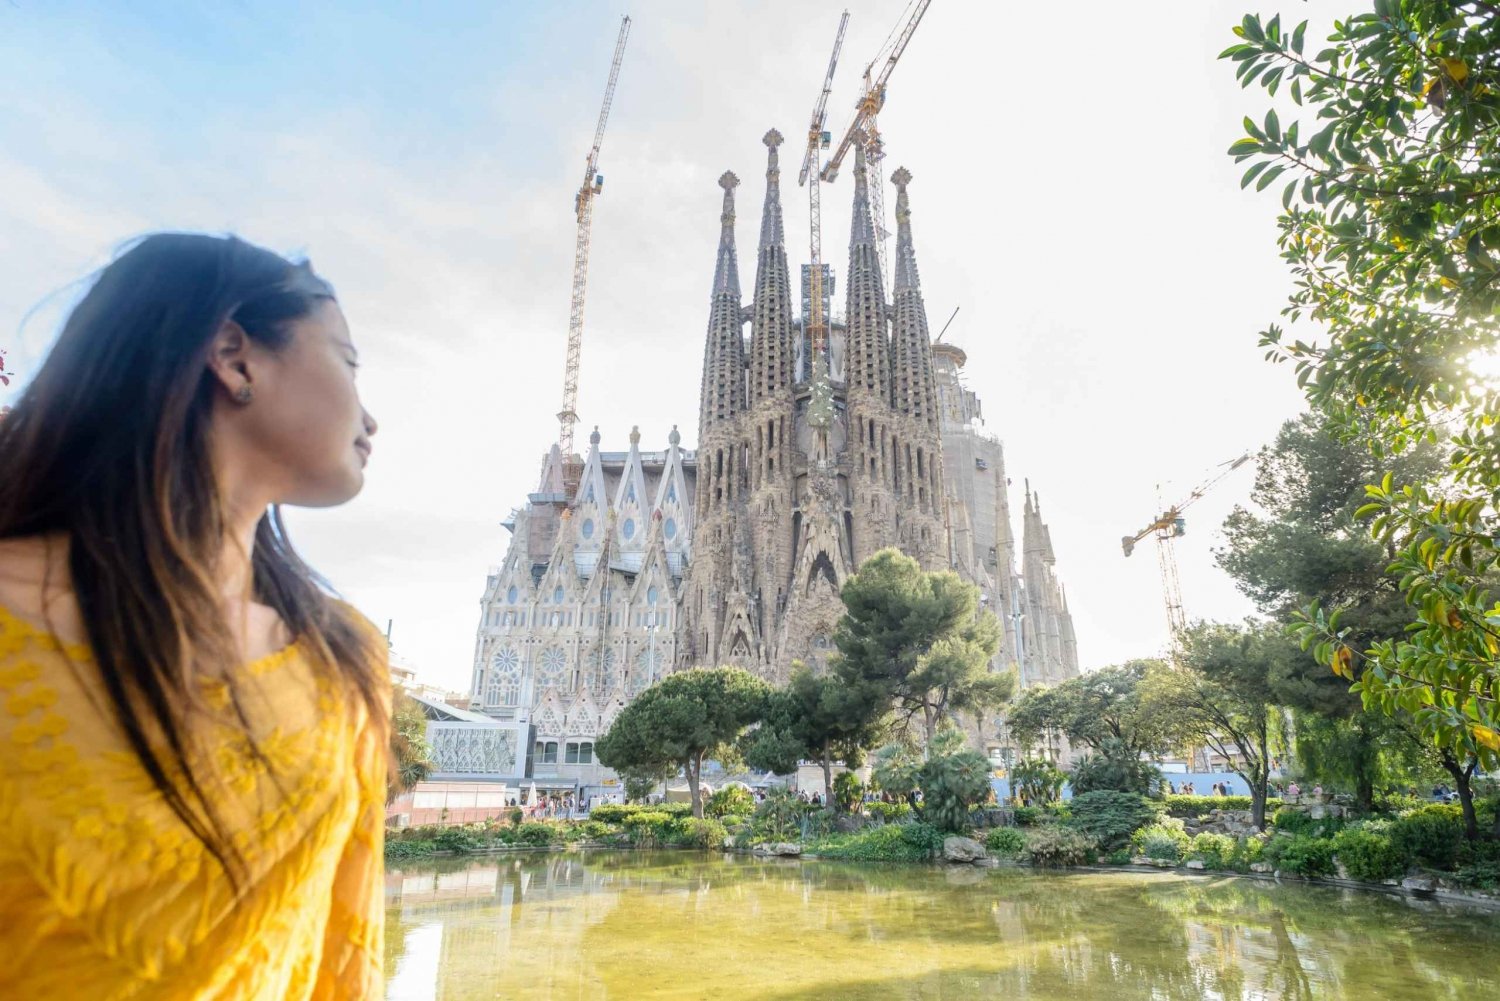 Barcelona: Zwiedzanie Sagrada Familia i opcjonalna wizyta w wieży